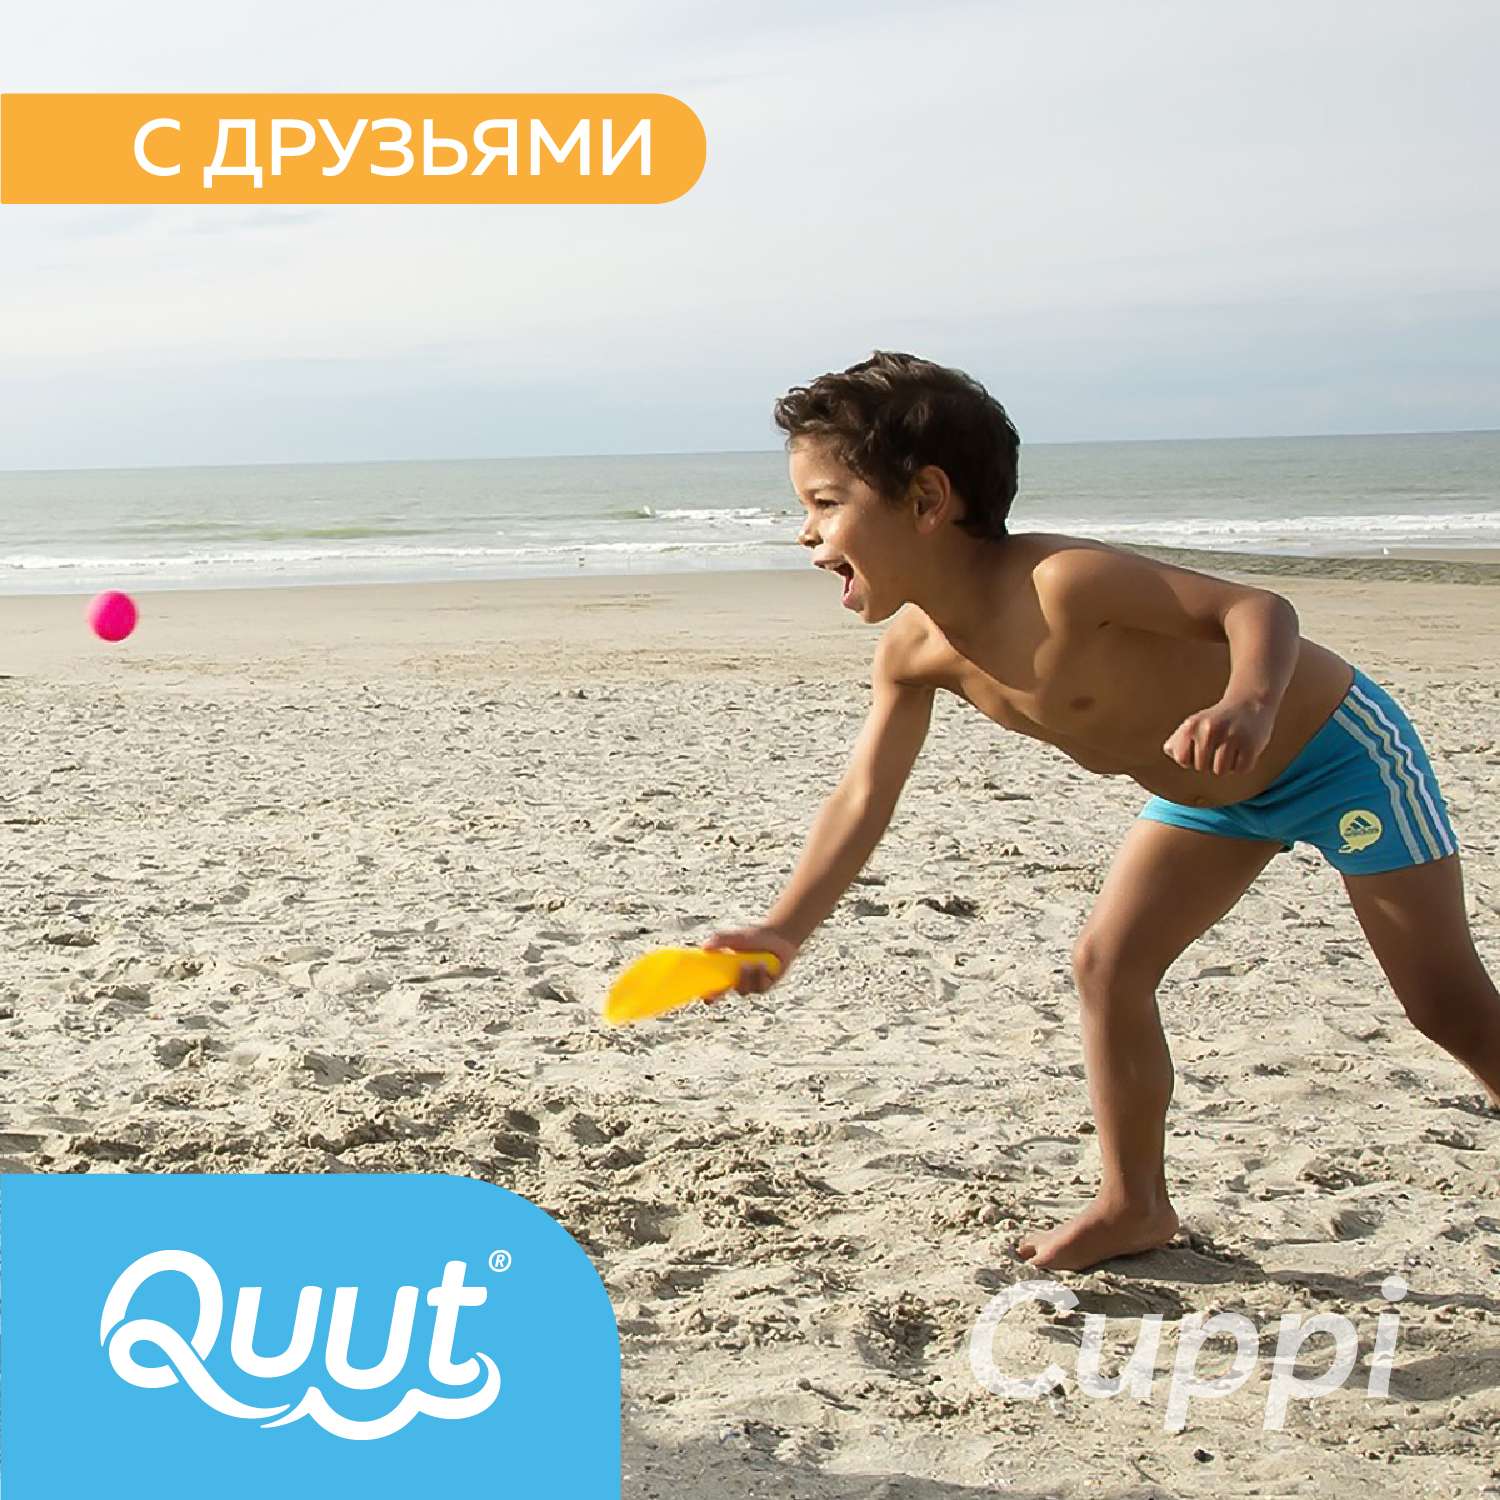 Набор для песка и снега QUUT Cuppi океан + красный мячик - фото 6